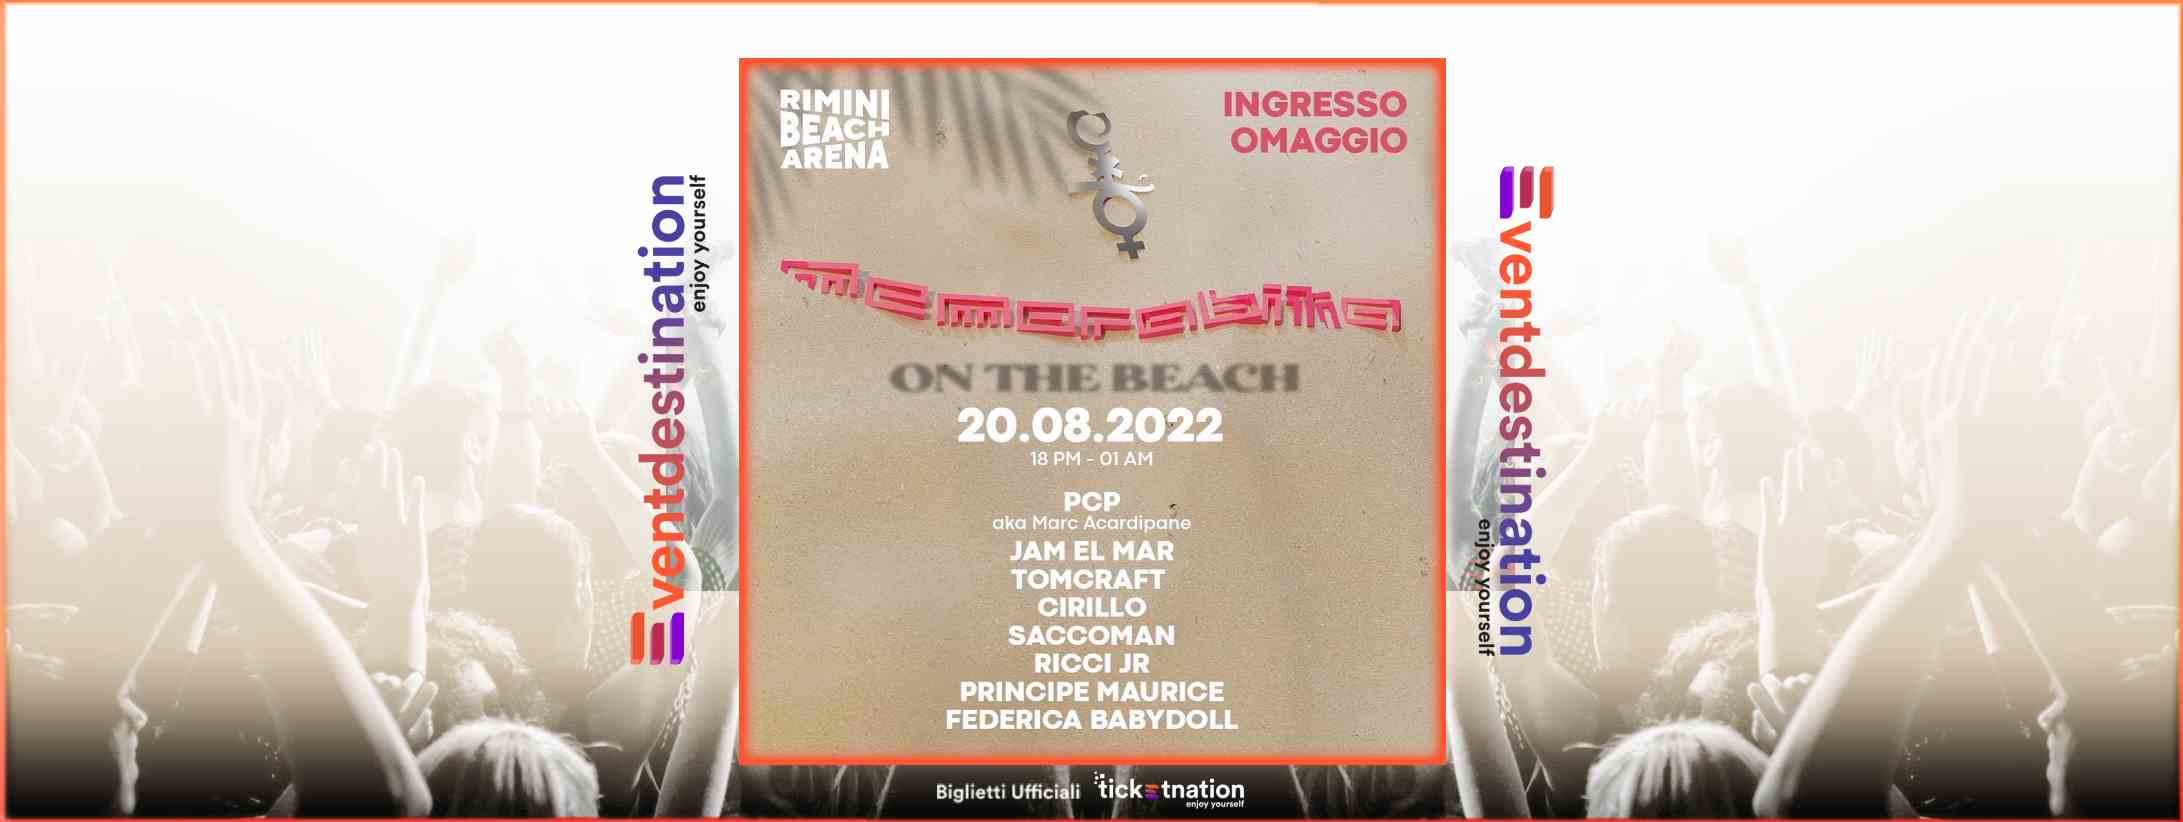 Memorabilia @ Rimini Beach Arena 20 08 2022